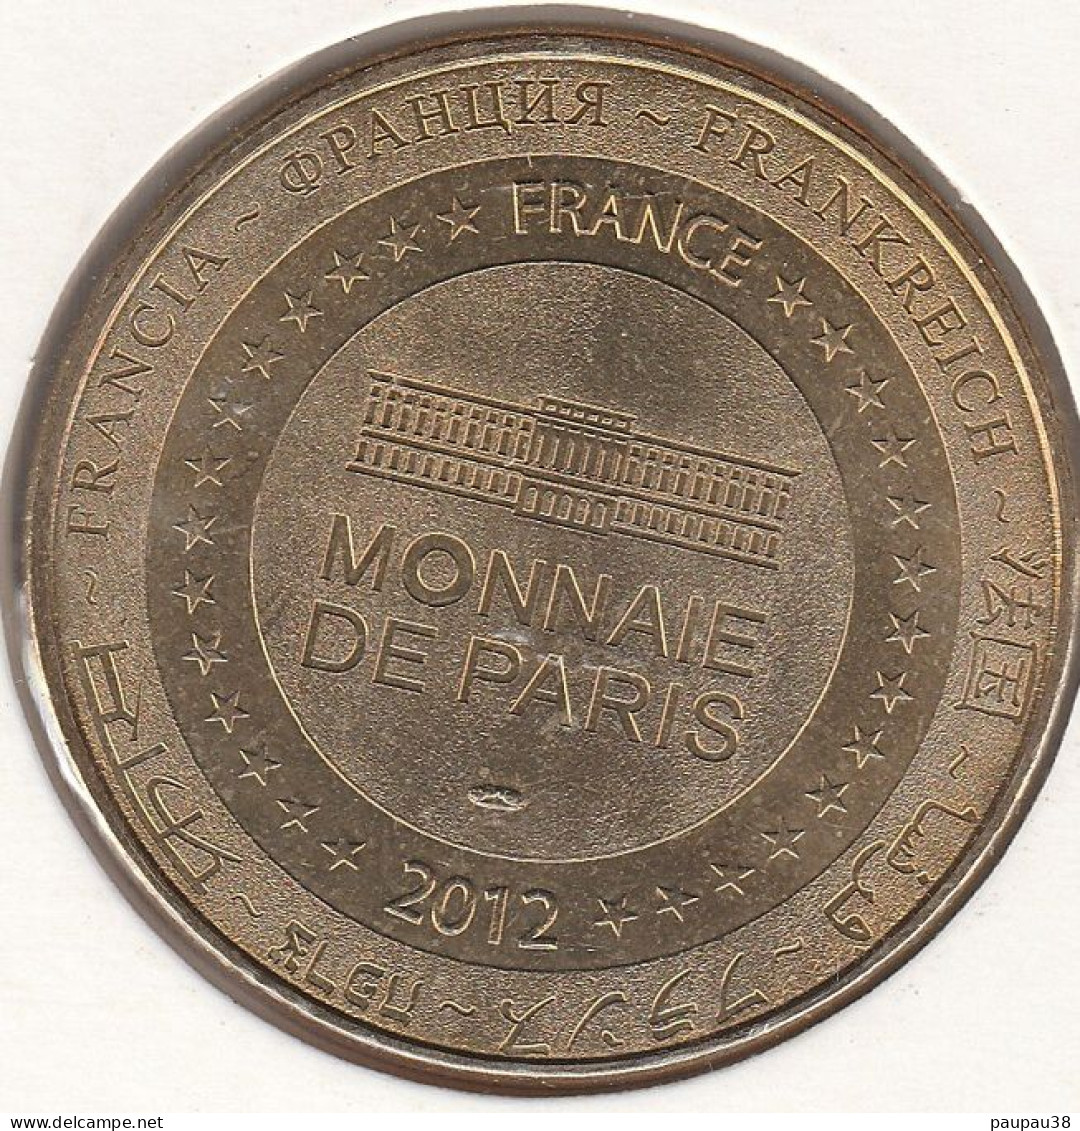 MONNAIE DE PARIS 2012 - 25 MONTBELIARD - Cité Des Princes - 2012